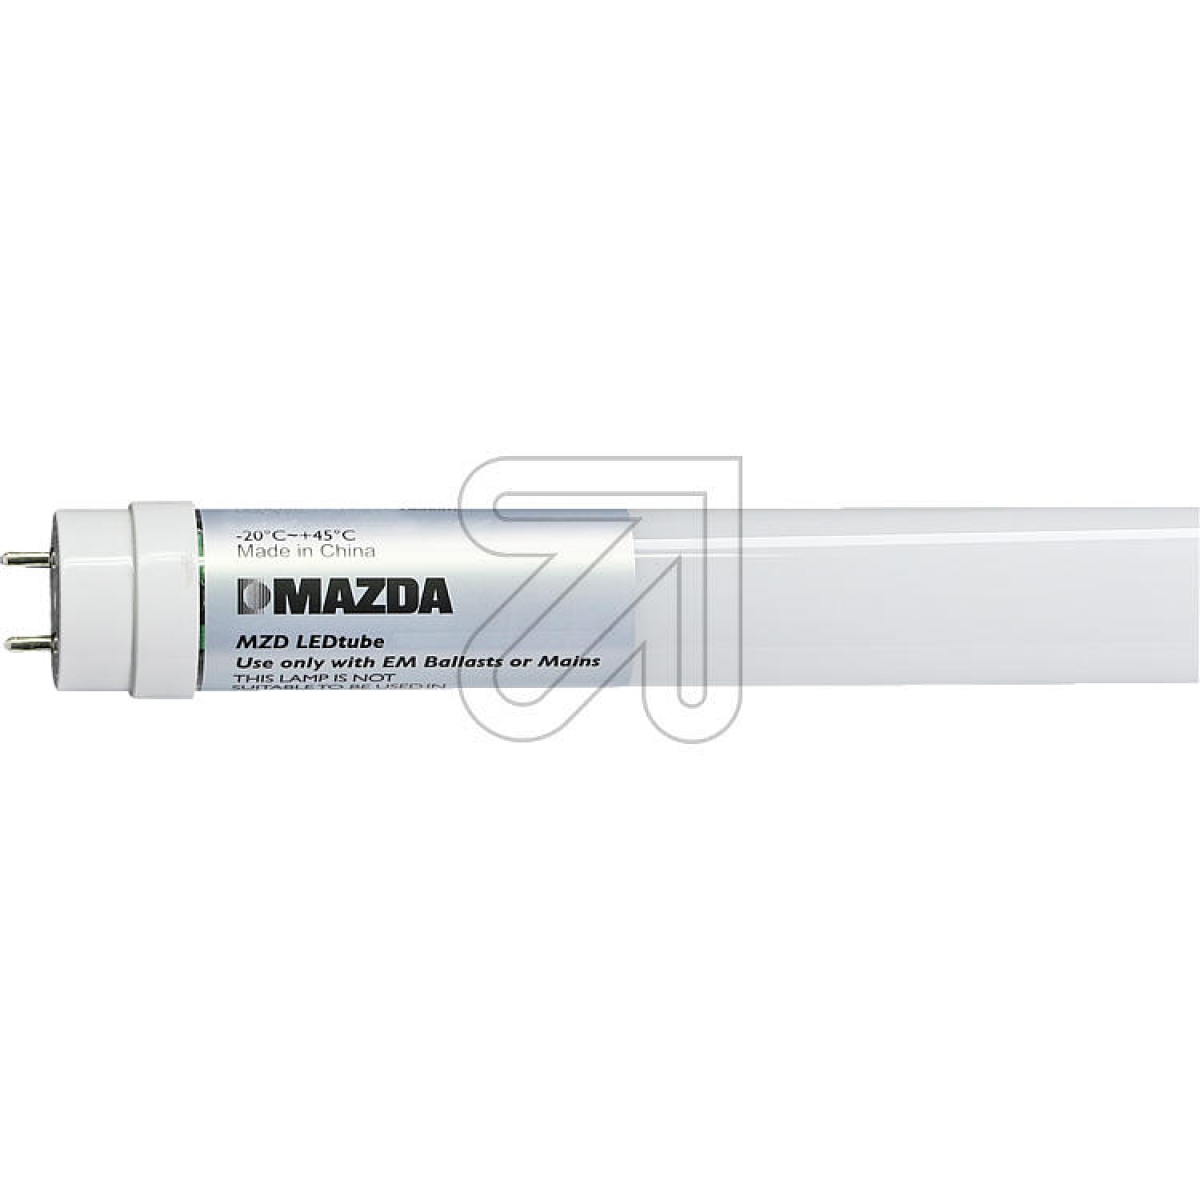 MAZDA LightingMAZDA LEDtube T8 1500mm UO 31.5W 840 54378900-Preis für 20 StückArtikel-Nr: 523040